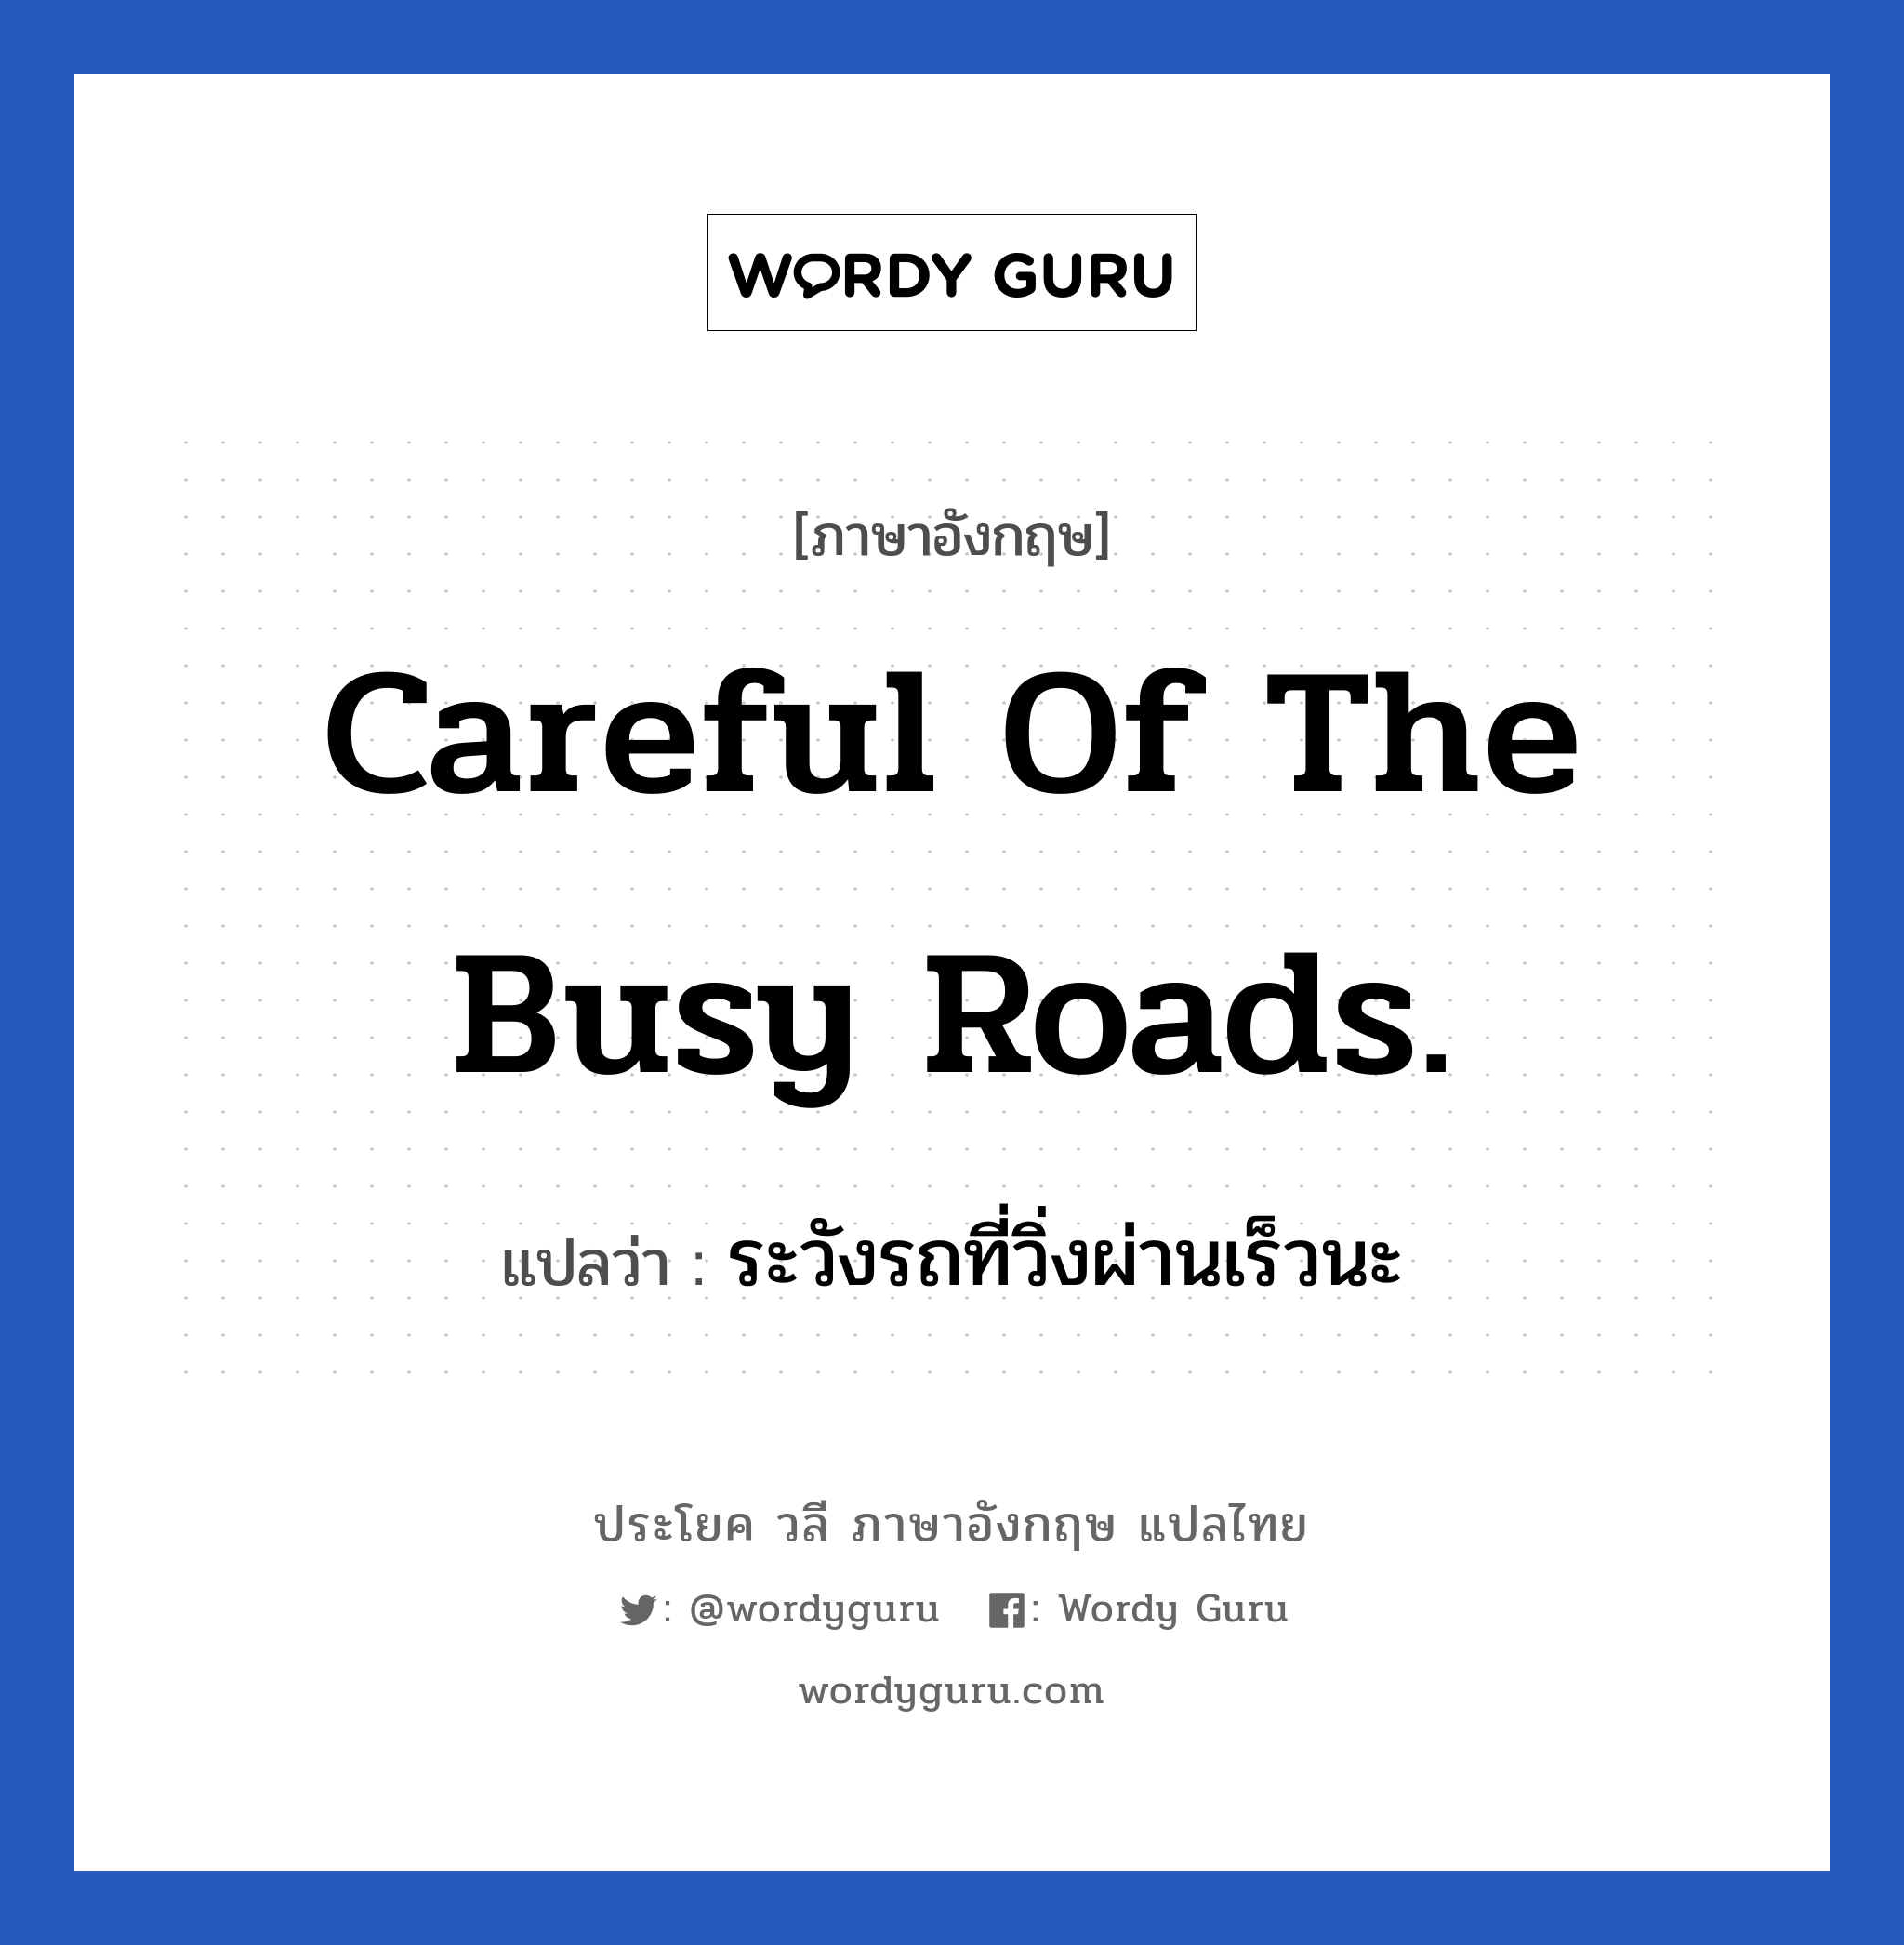 ระวังรถที่วิ่งผ่านเร็วนะ ภาษาอังกฤษ?, วลีภาษาอังกฤษ ระวังรถที่วิ่งผ่านเร็วนะ แปลว่า Careful of the busy roads.